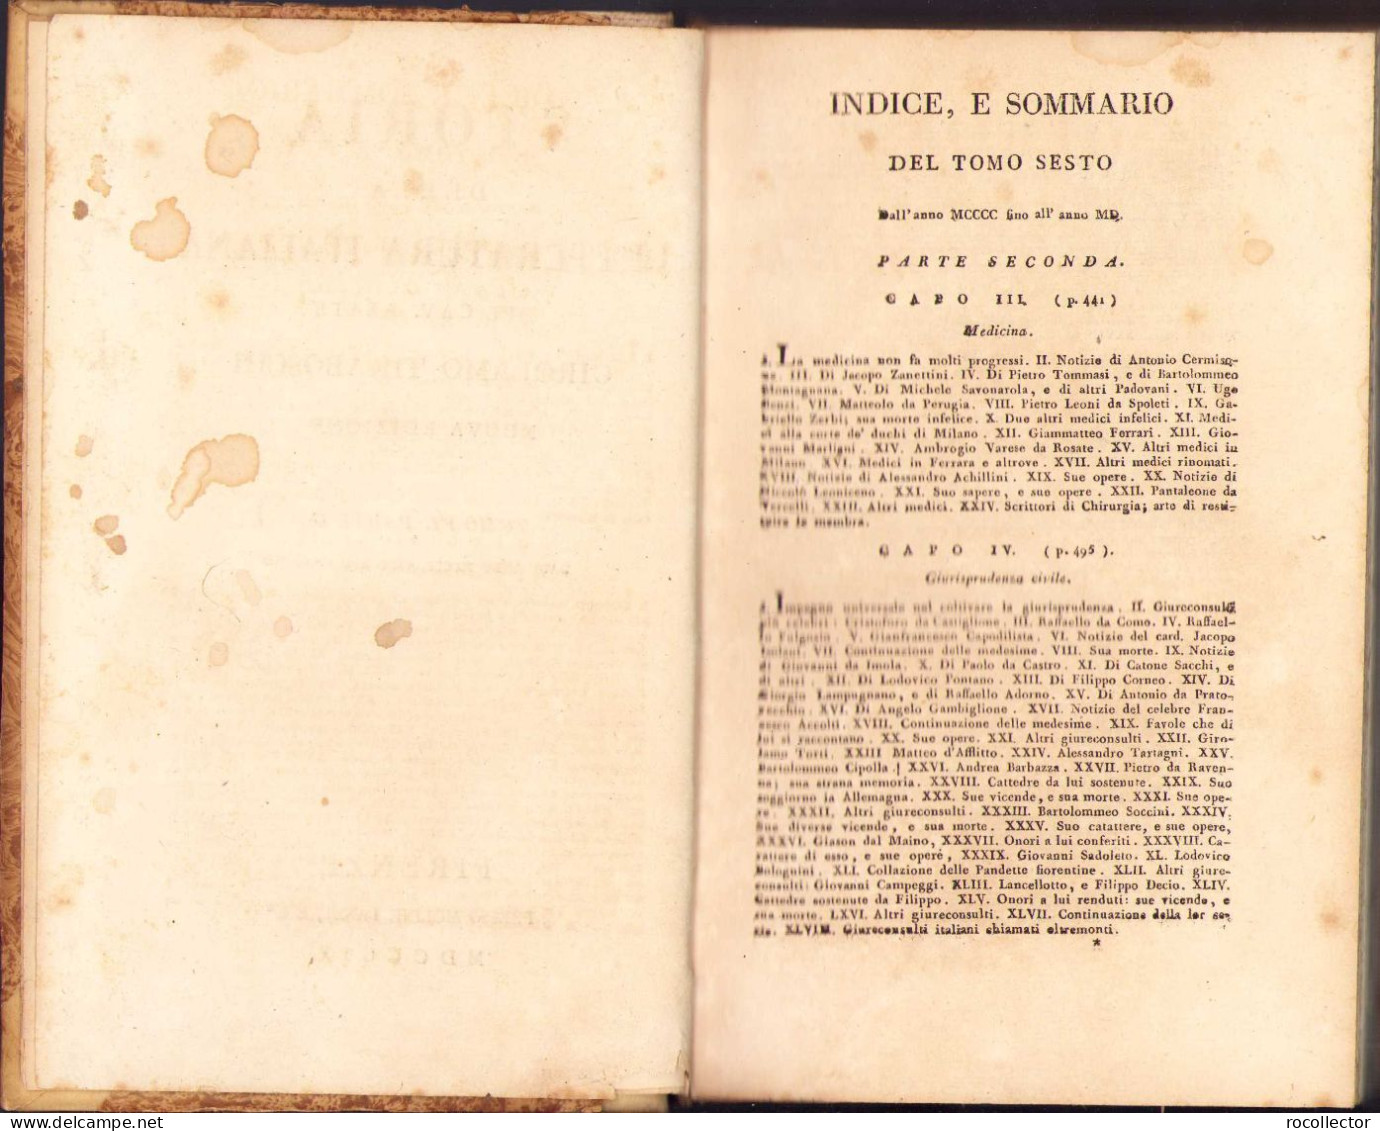 Storia Della Letteratura Italiana De Girolamo Tiraboschi, Tome VI, Part II, 1809, Firenze 171SP - Dictionnaires